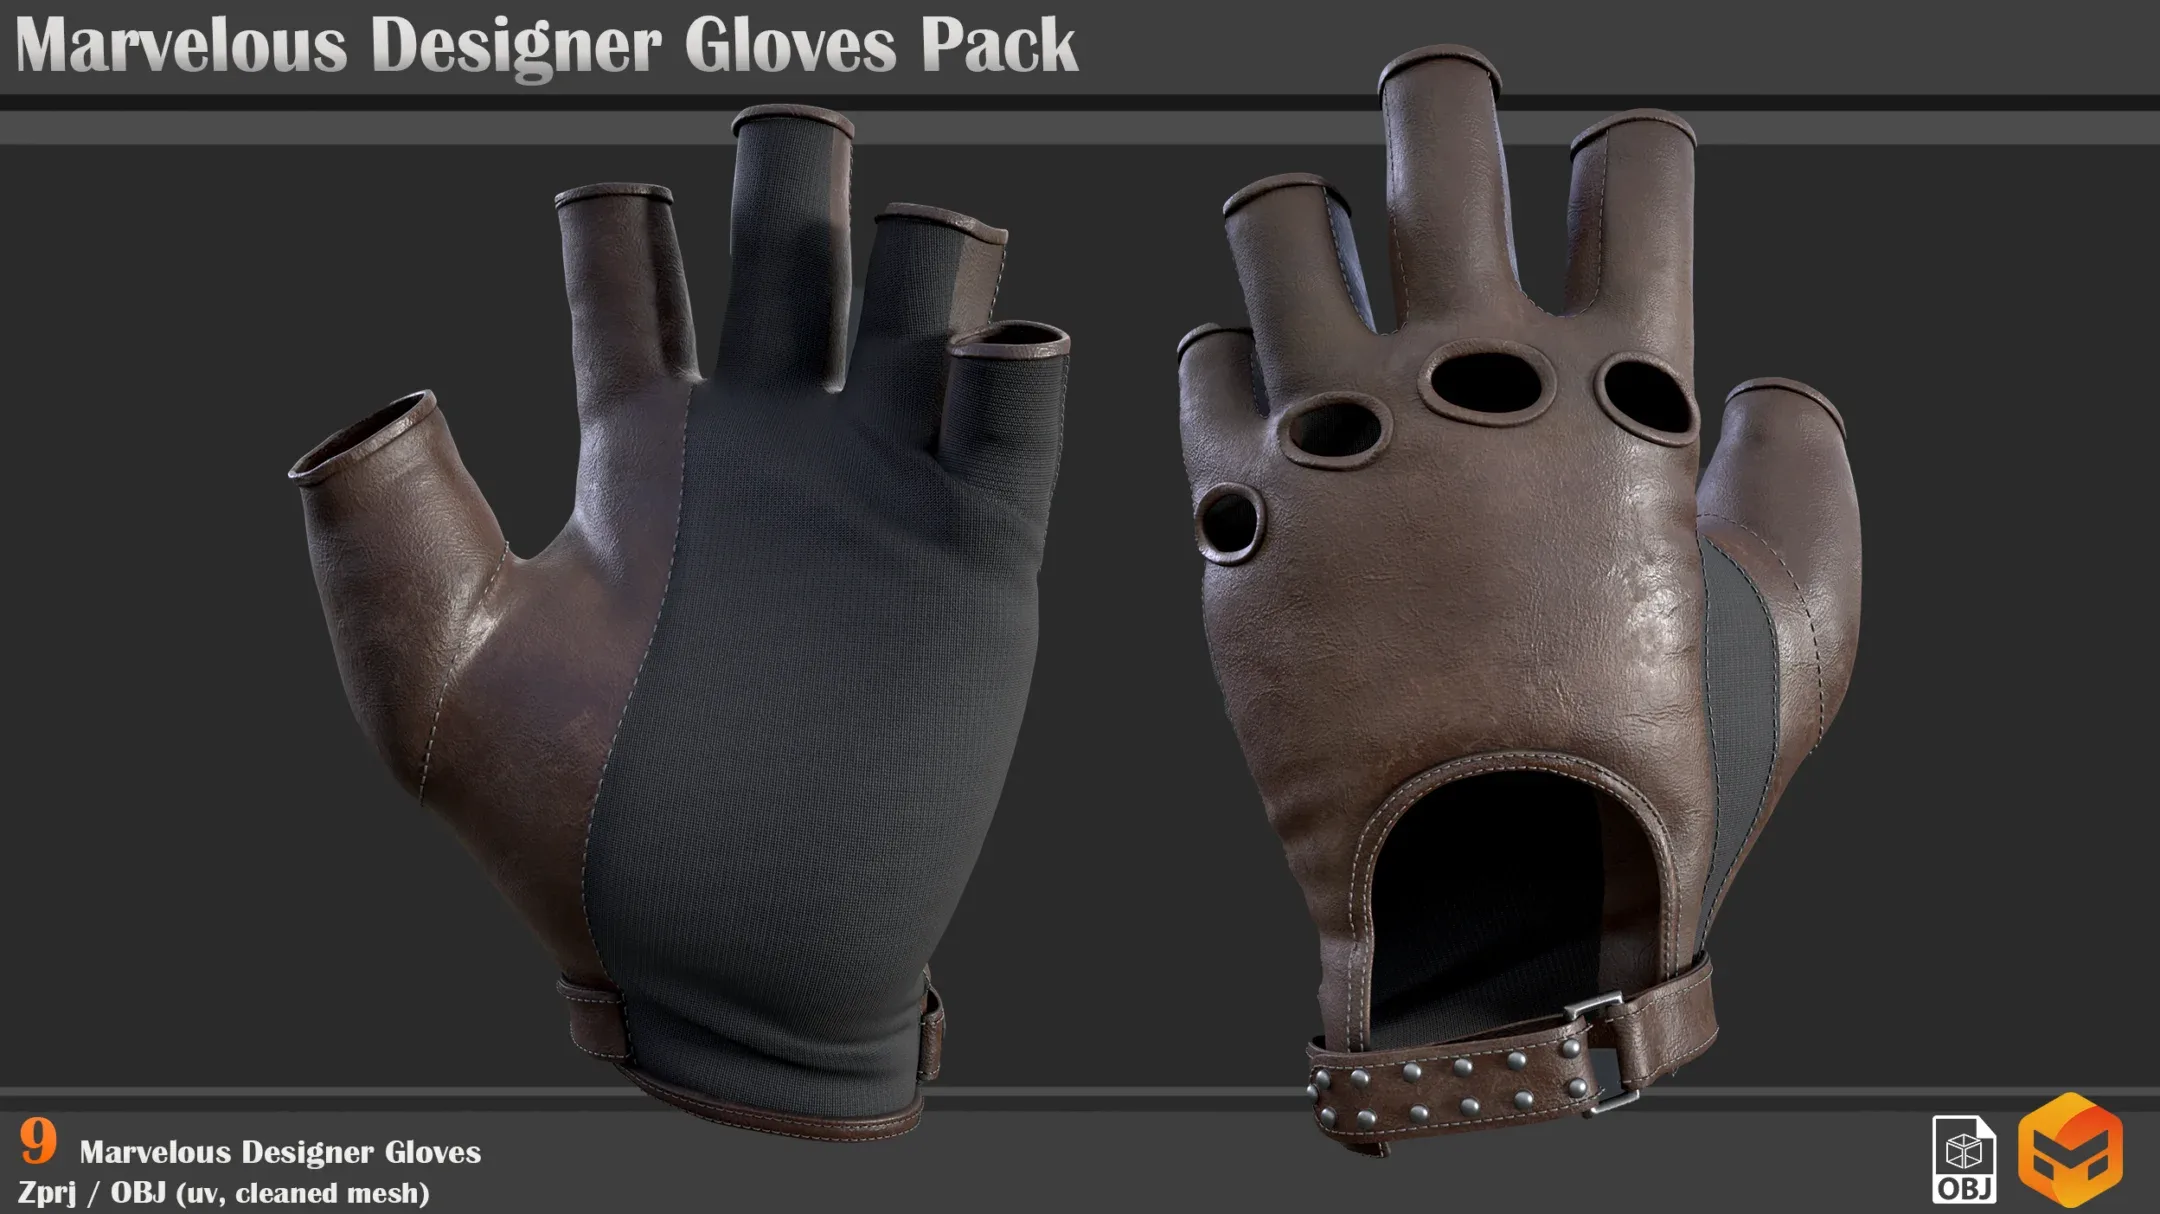 Marvelous Designer Glove Pack